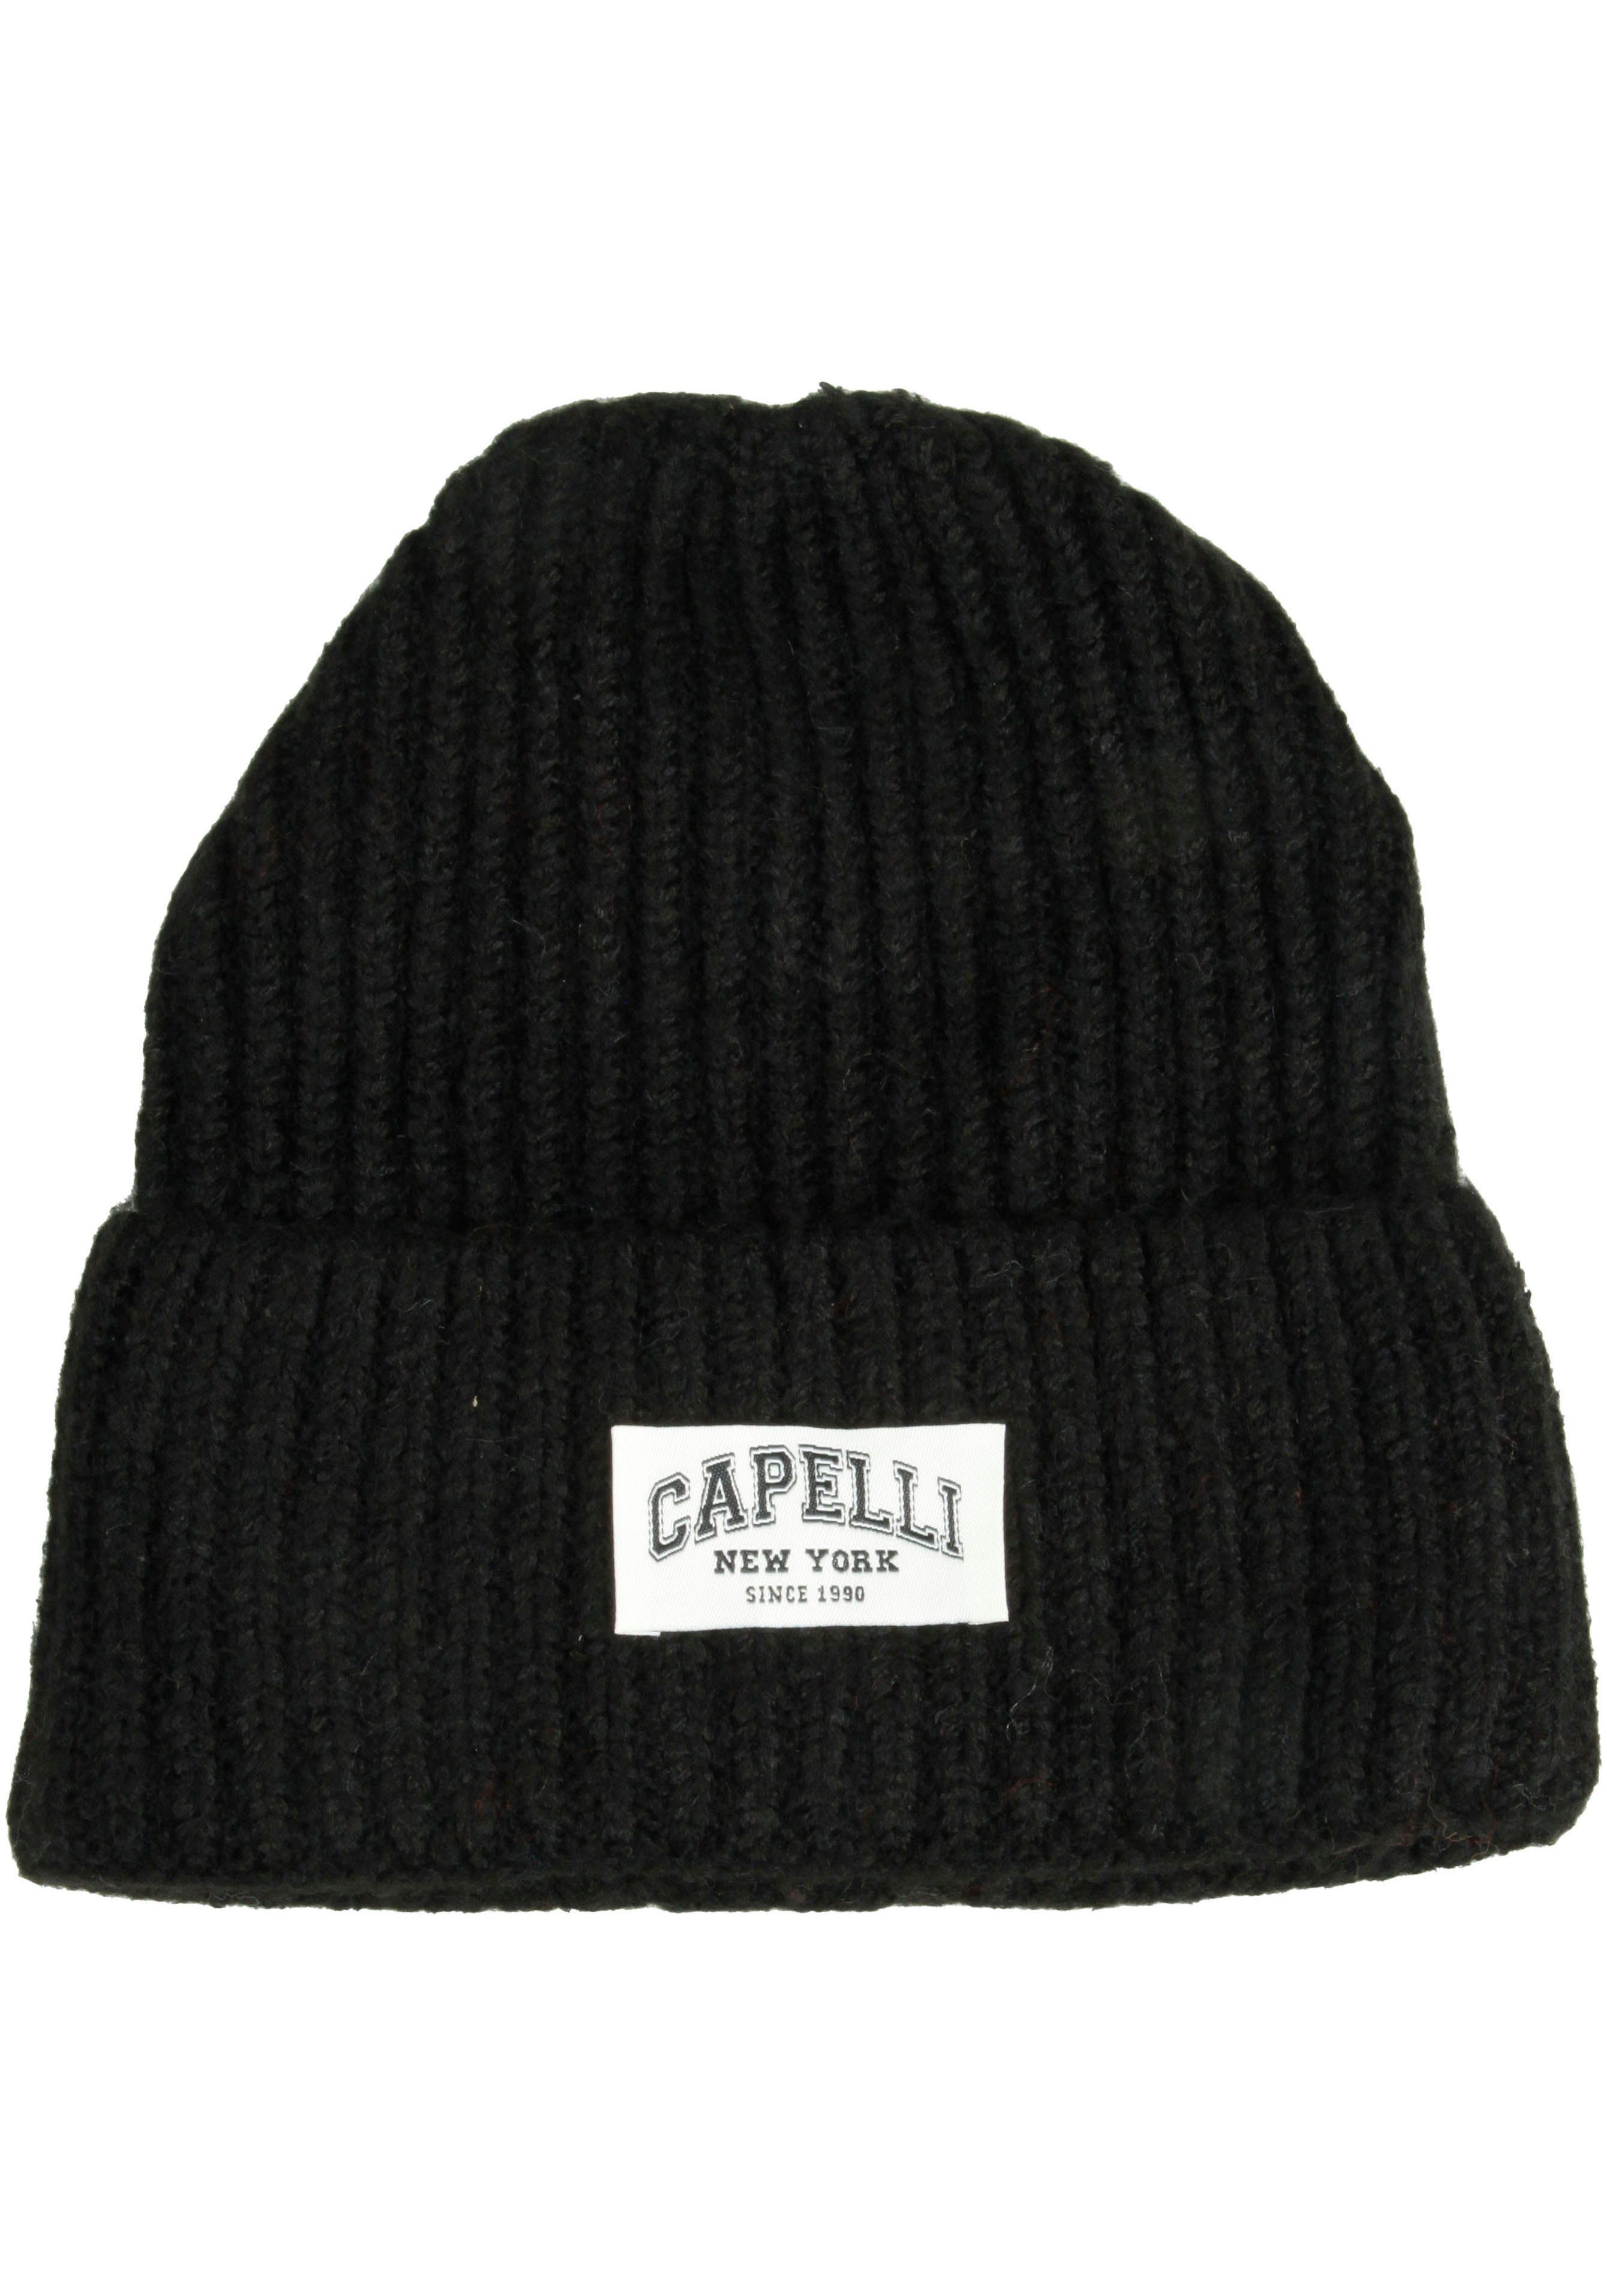 schwarz Strickmütze Capelli New York vorn Breiter Umschalg, Logo